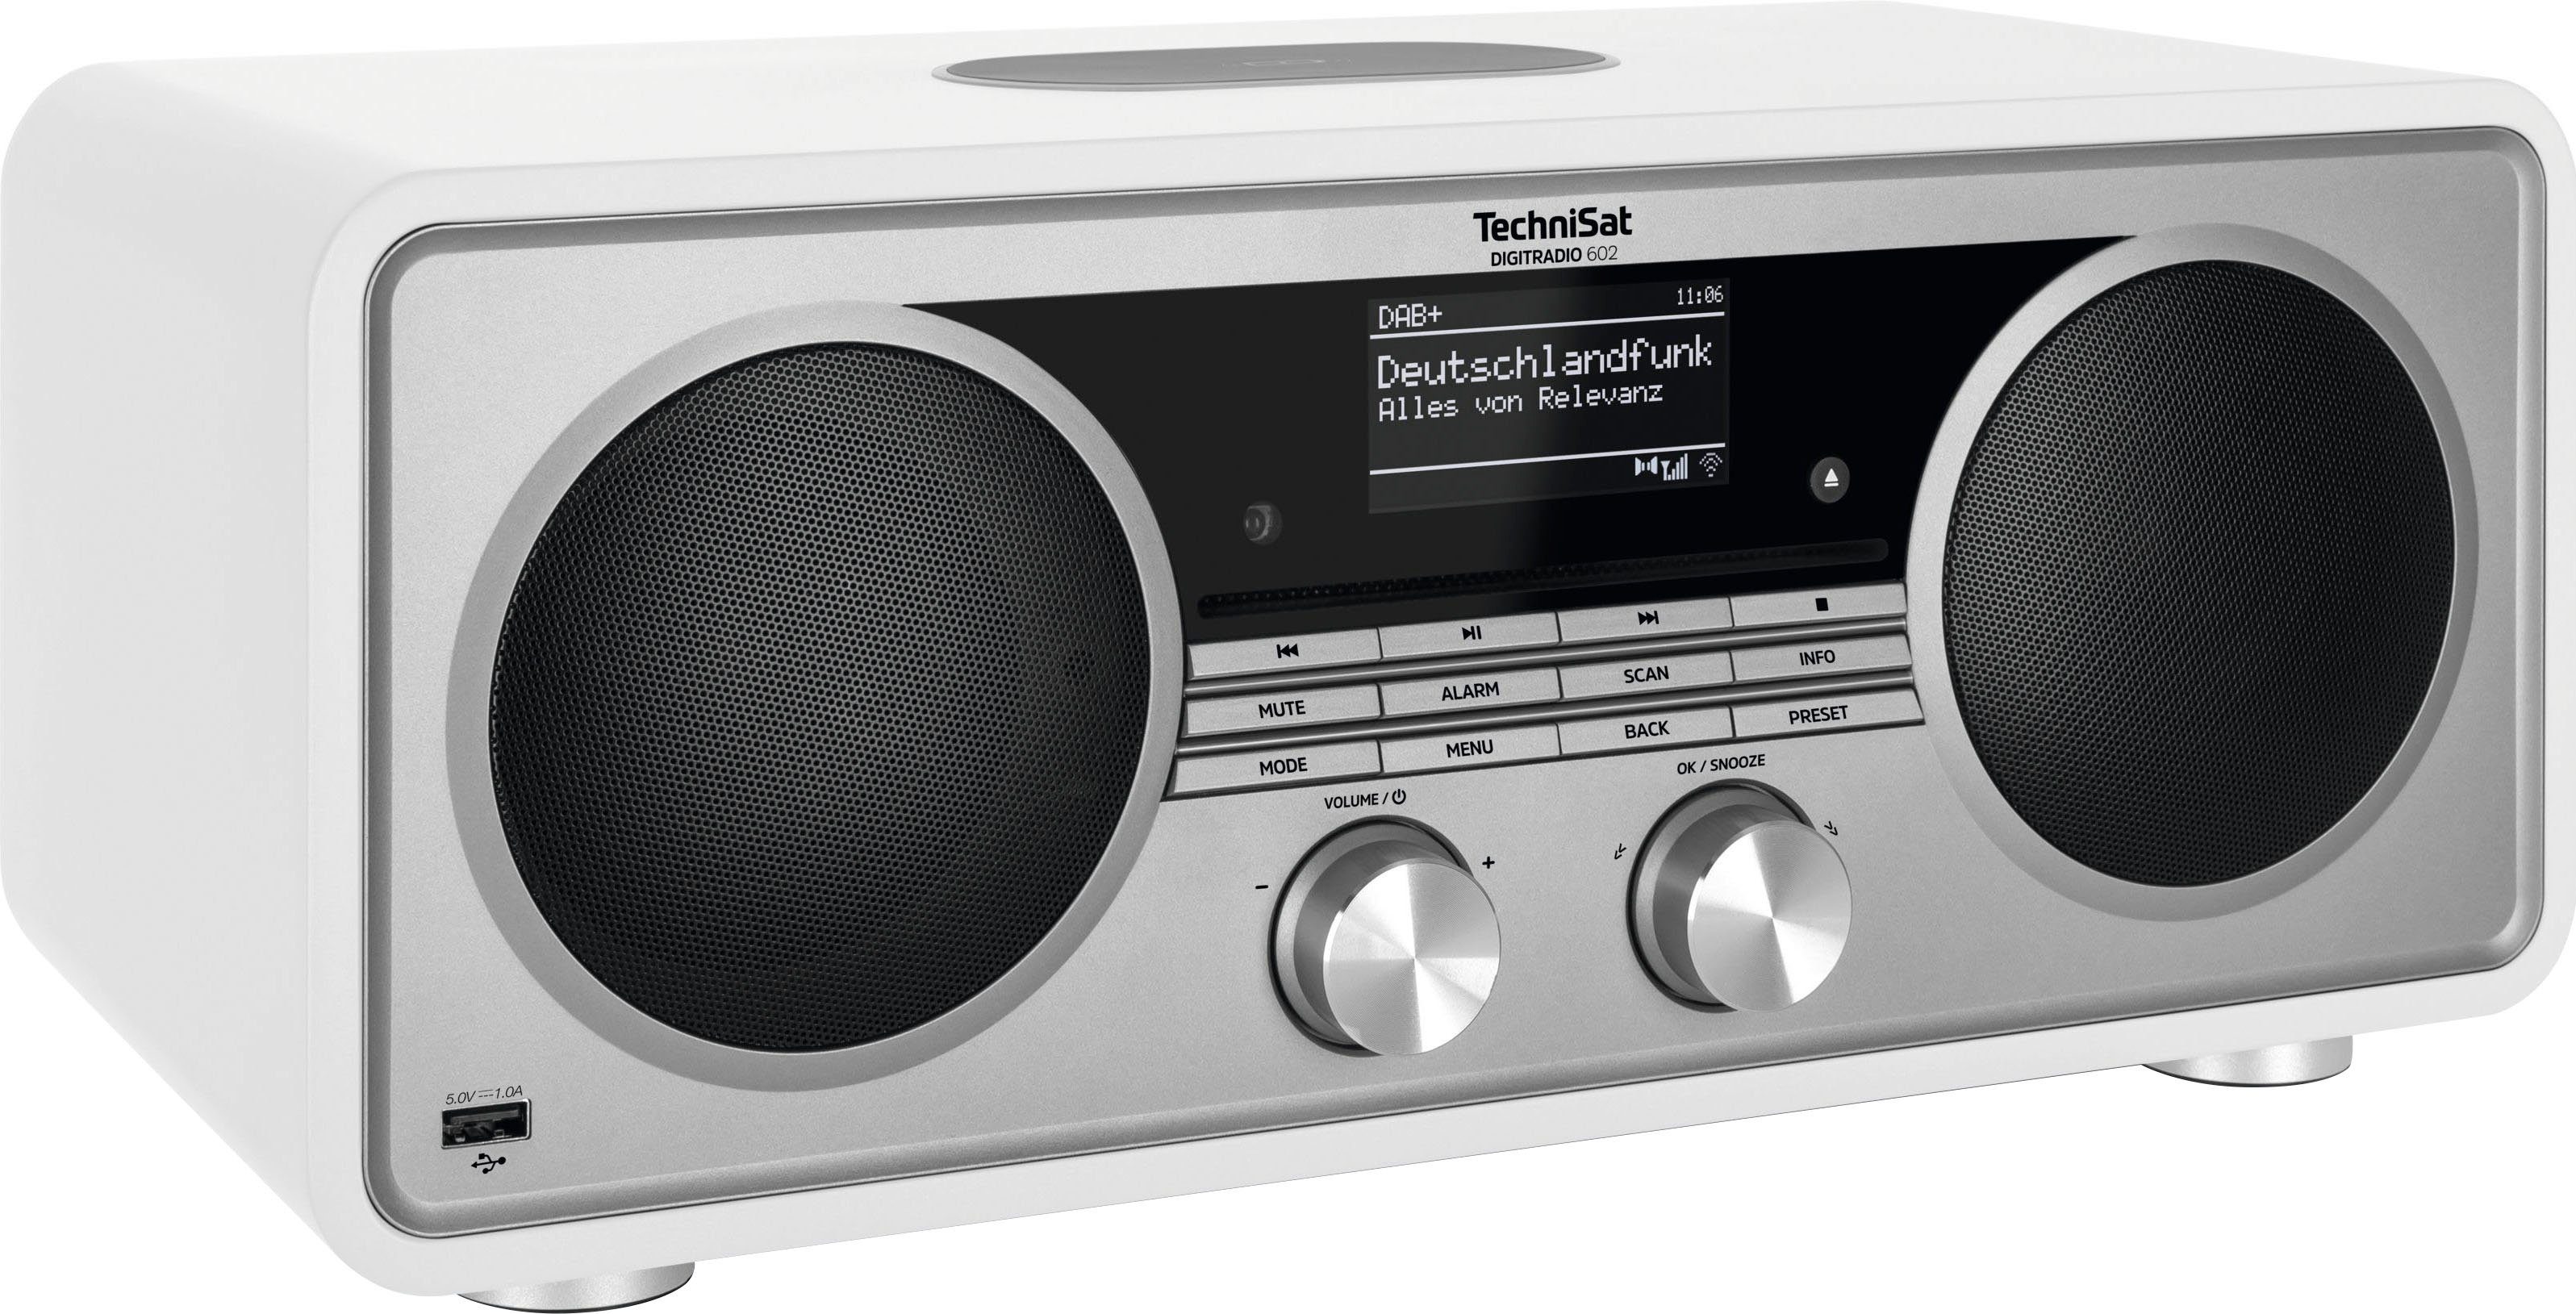 TechniSat DIGITRADIO 602 Internet-Radio (Digitalradio (DAB), UKW mit RDS, 70 W, Stereoanlage, CD-Player) Weiß/Silber